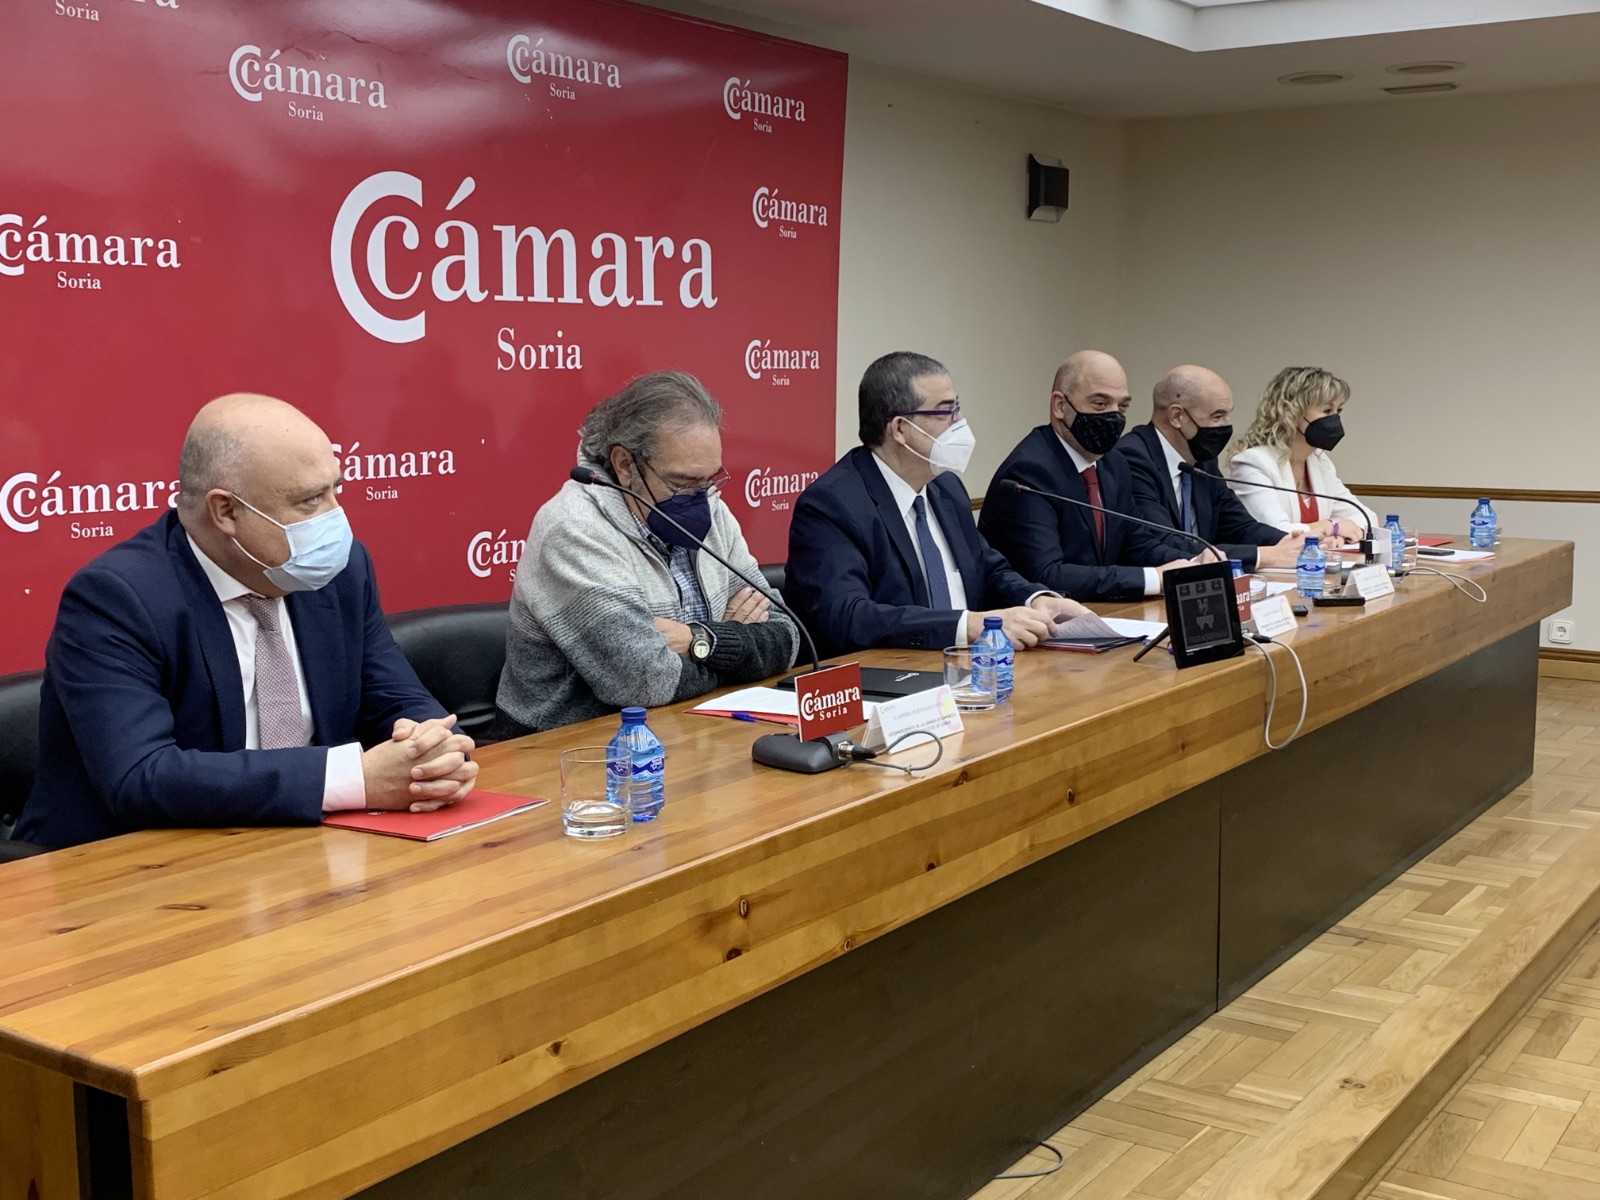 Las Cámaras de Soria, Teruel y Cuenca firman un manifiesto para pedir al Gobierno que articule y ponga en marcha las ayudas a zonas despobladas